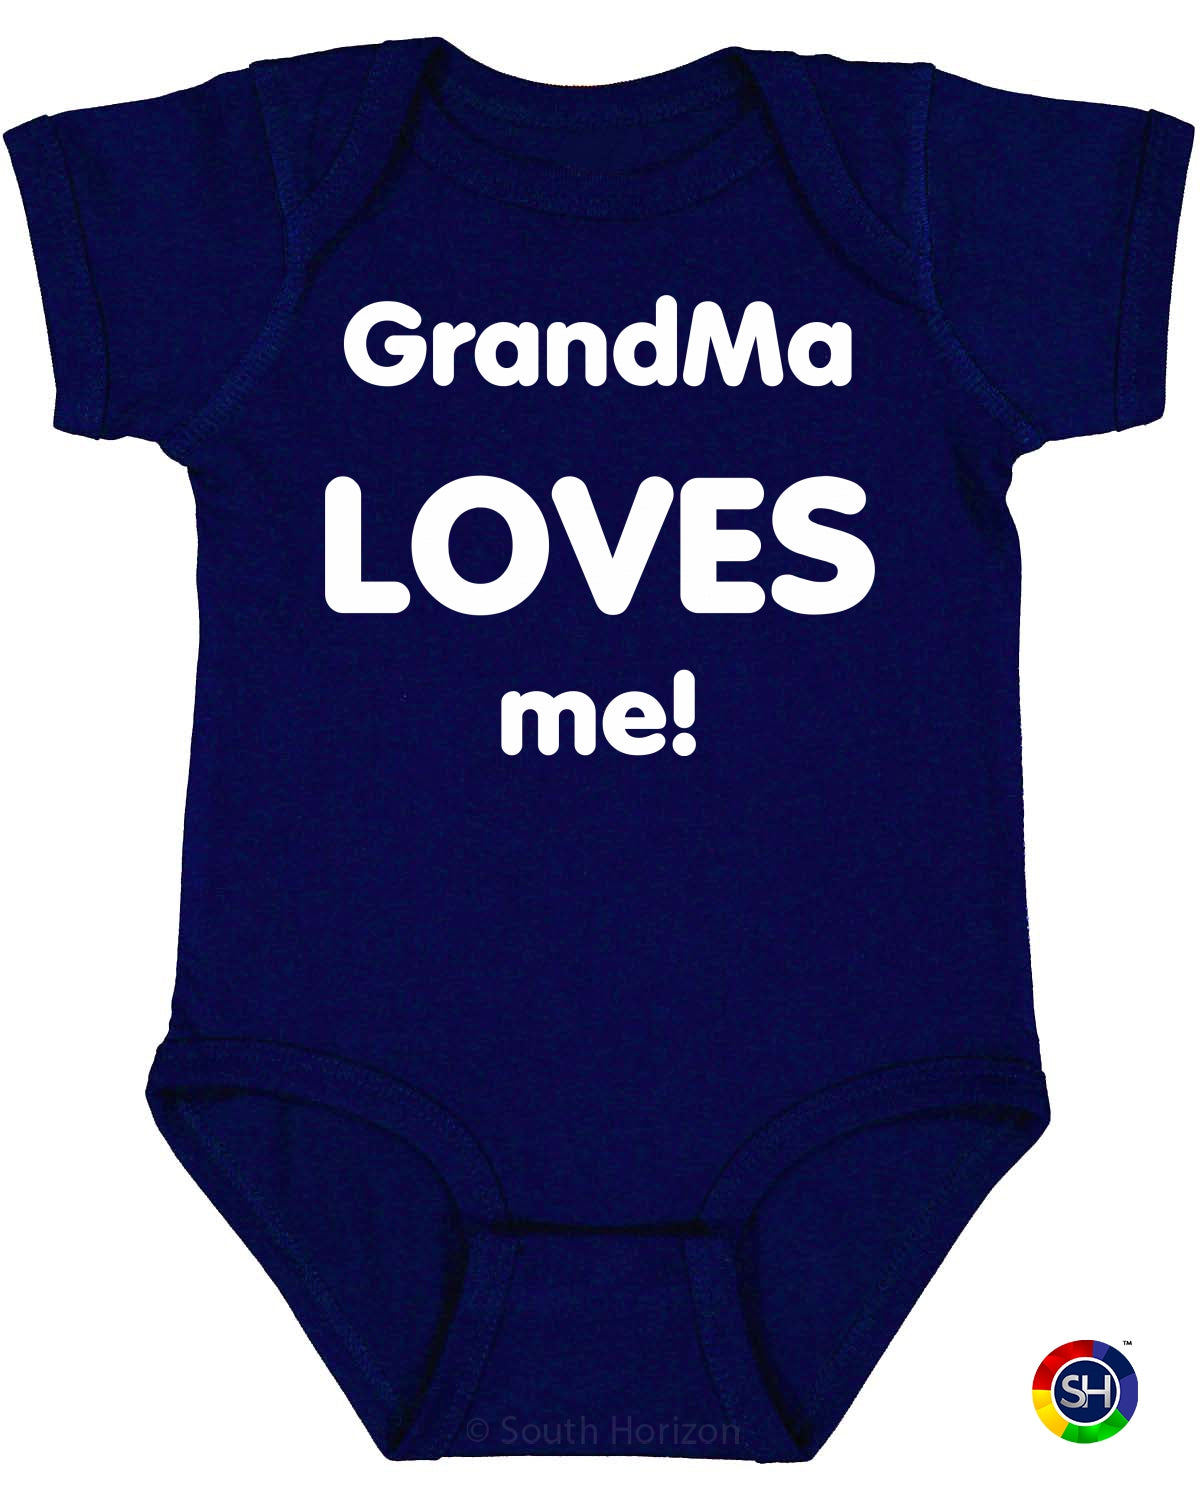 Grandma Loves Me on Infant BodySuit (#576-10)